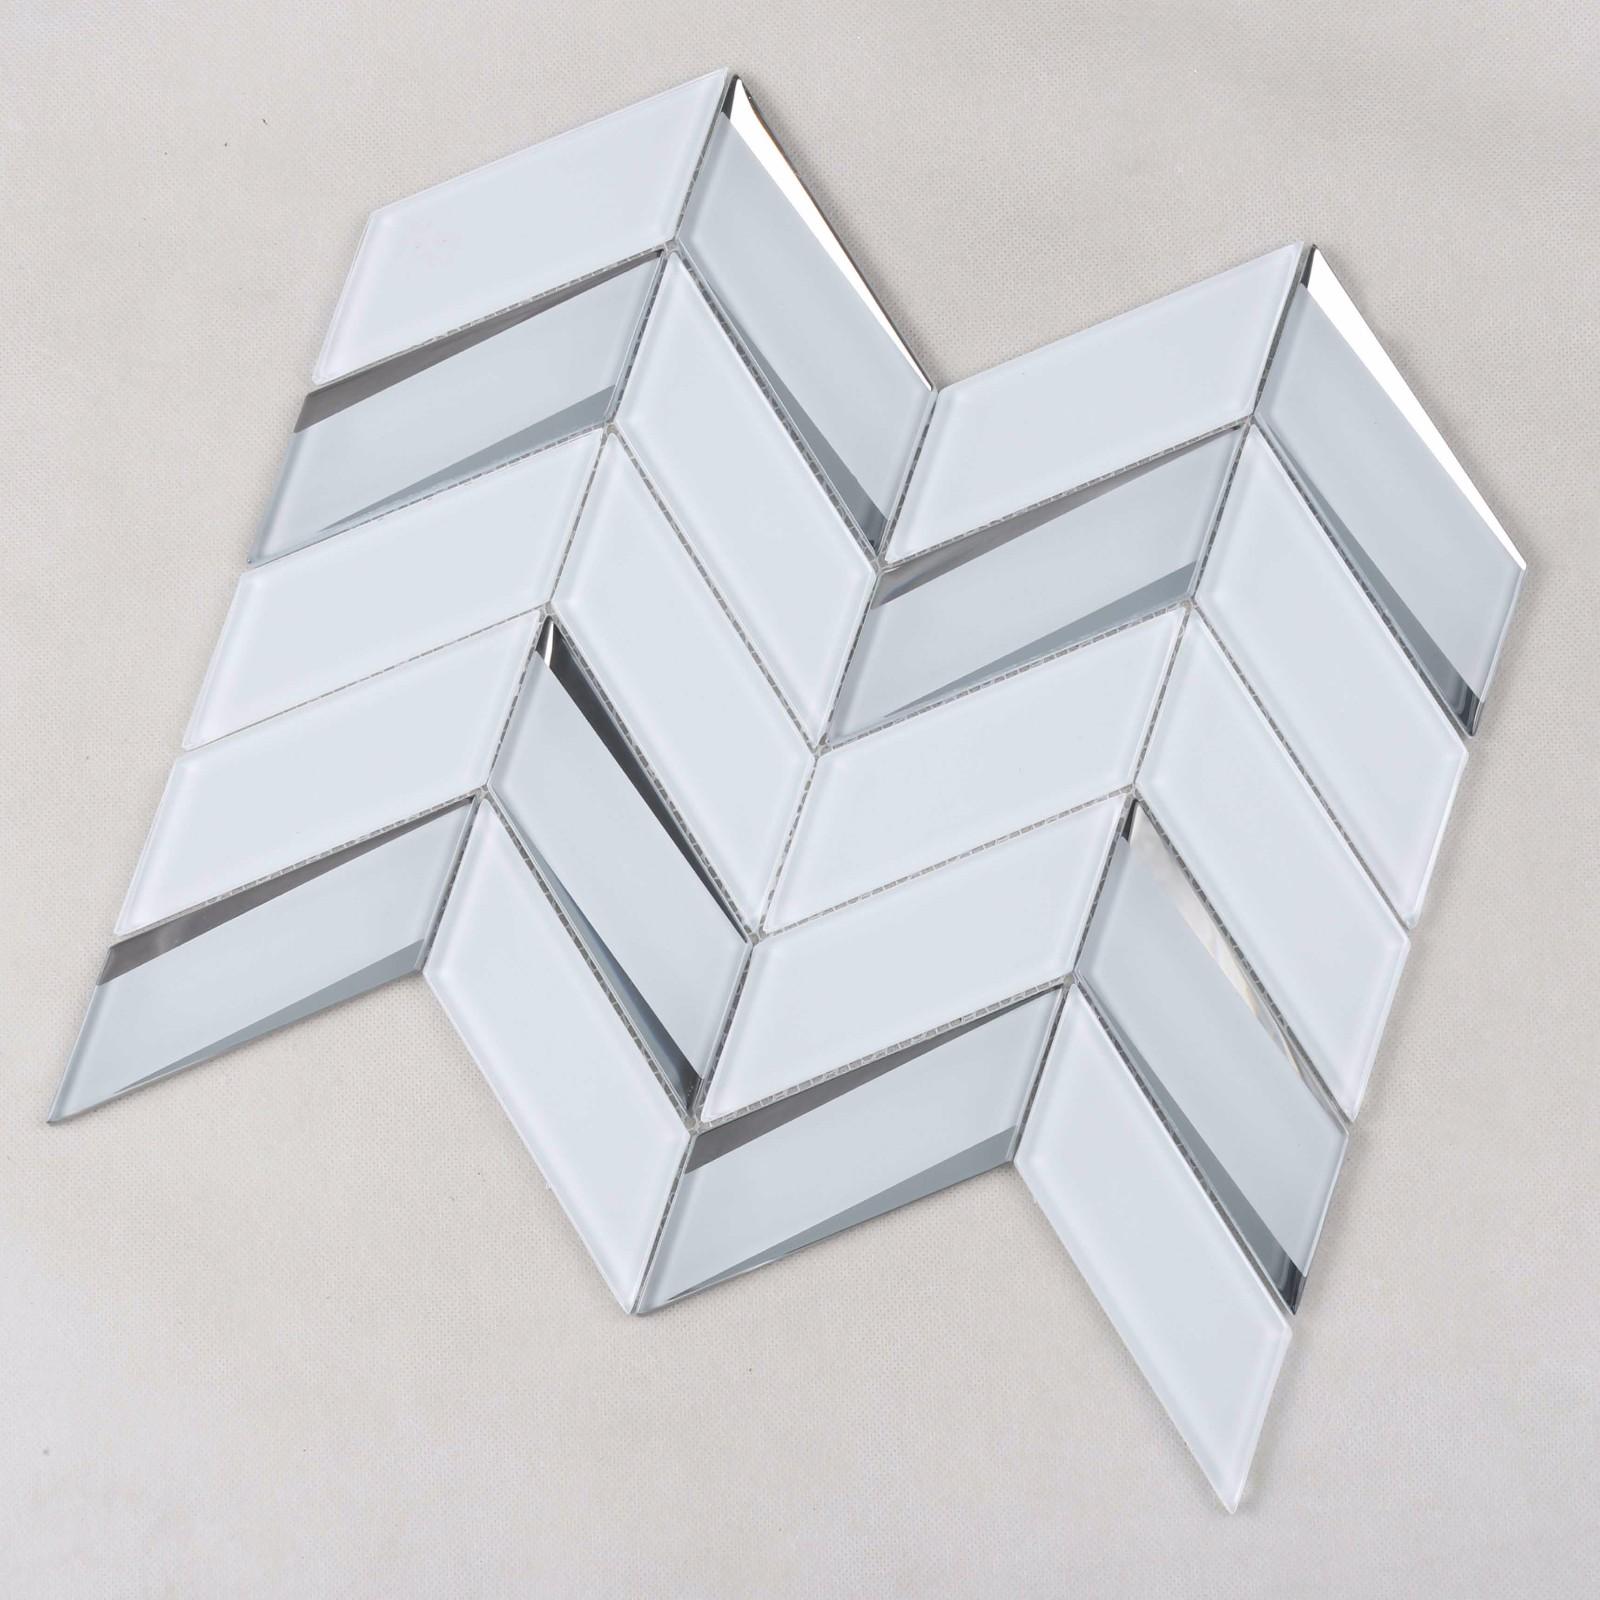 Heng Xing-Oem Inkjet Tile Manufacturer, Glass Metal Backsplash | Heng Xing-1